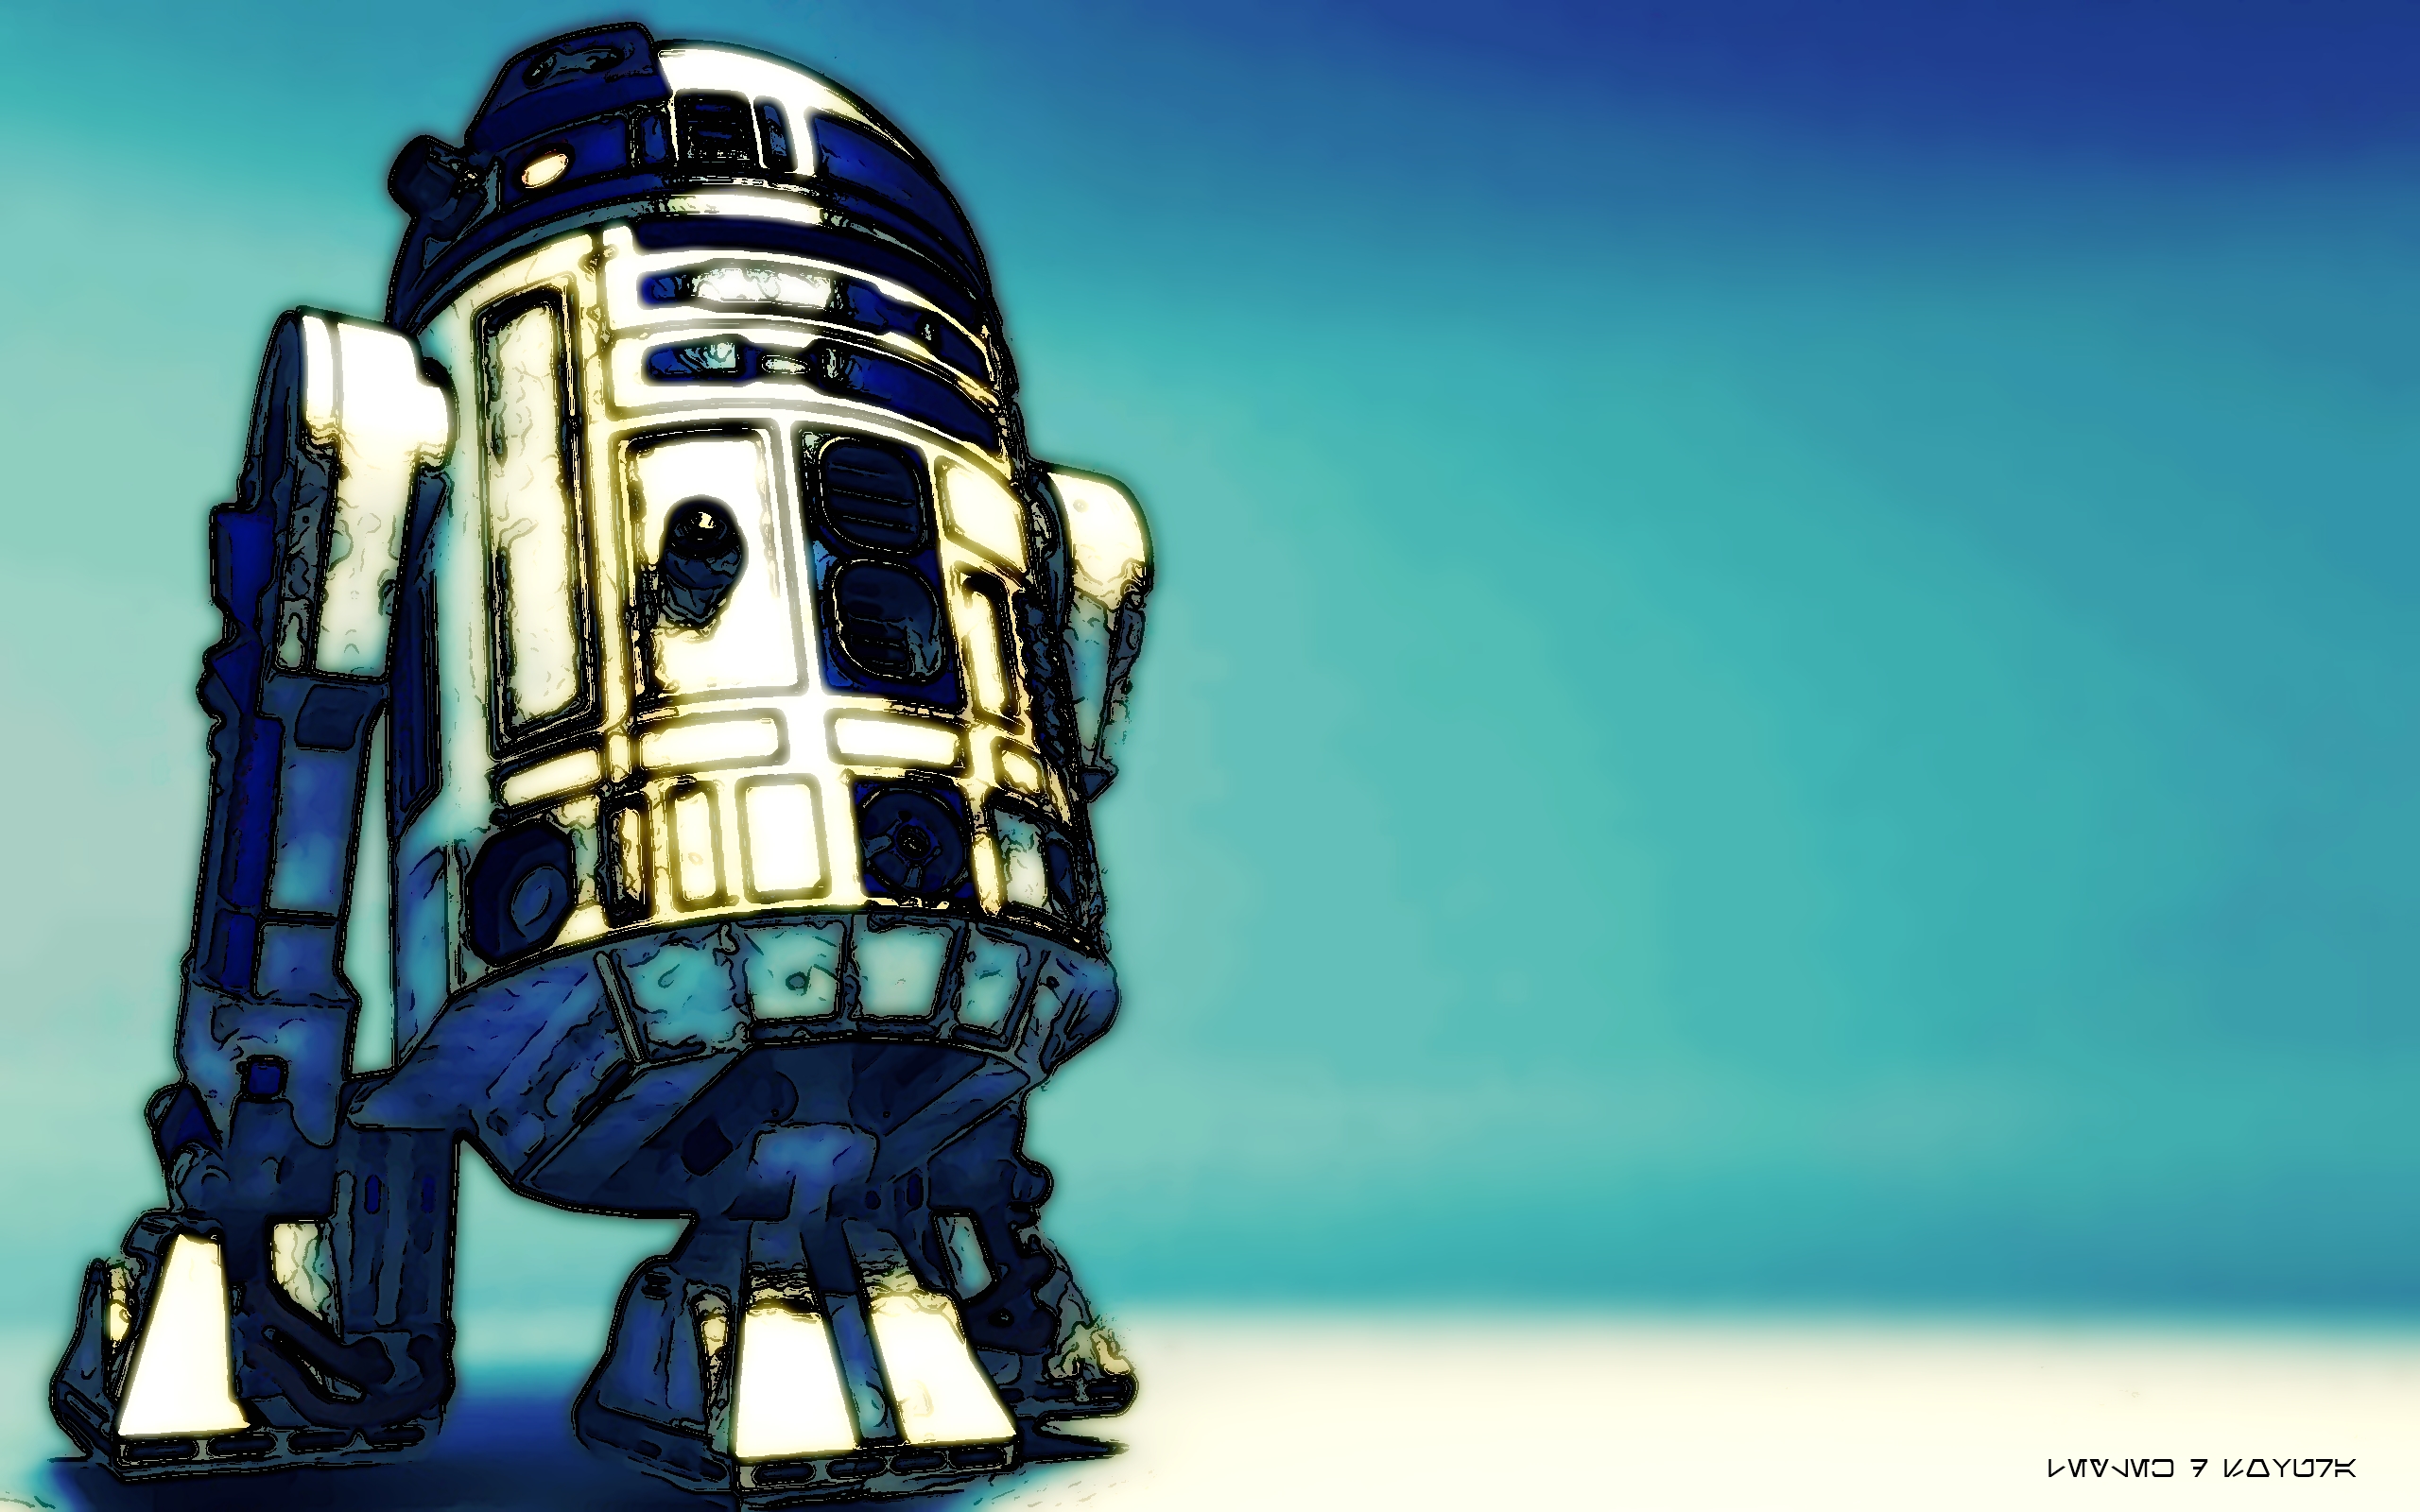 Leylek D Sovura Artwork R2 D2 Star Wars Star Wars Droids Blue Wallpaper Resolution 2560x1600 Id Wallha Com